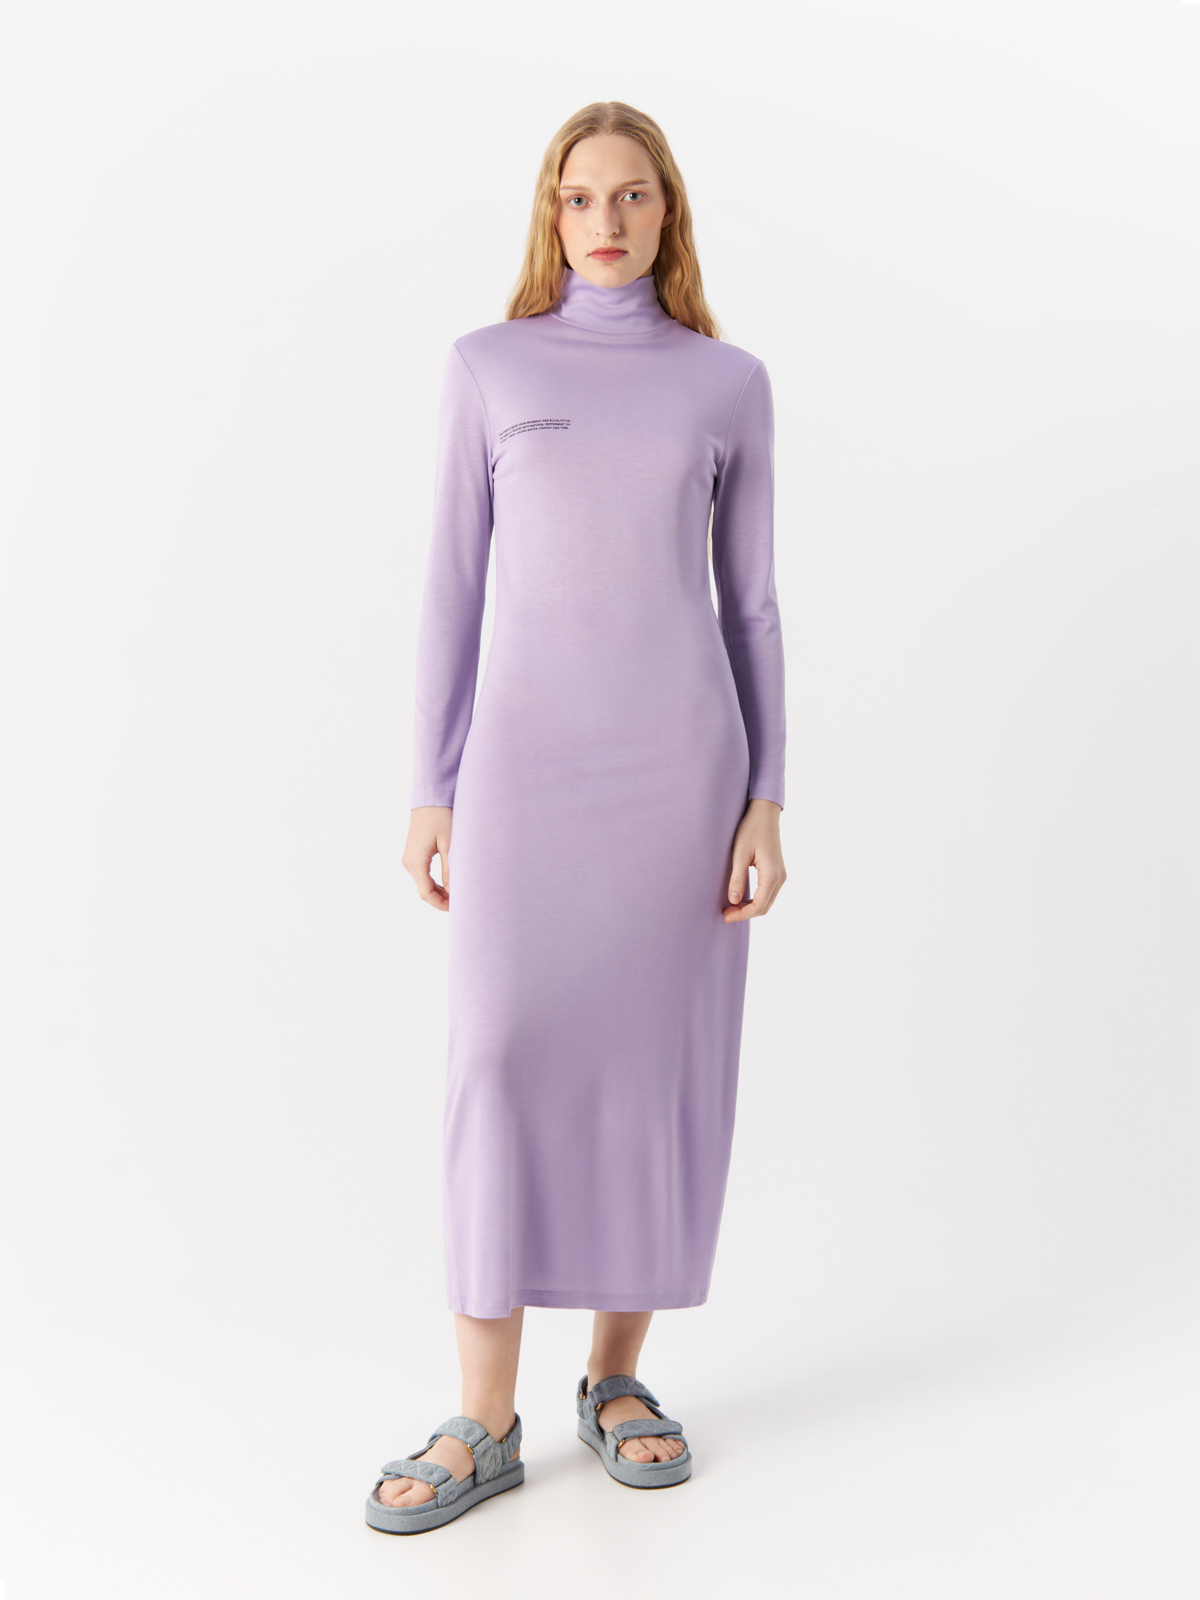 Платье Pangaia для женщин, размер XS, фиолетовое